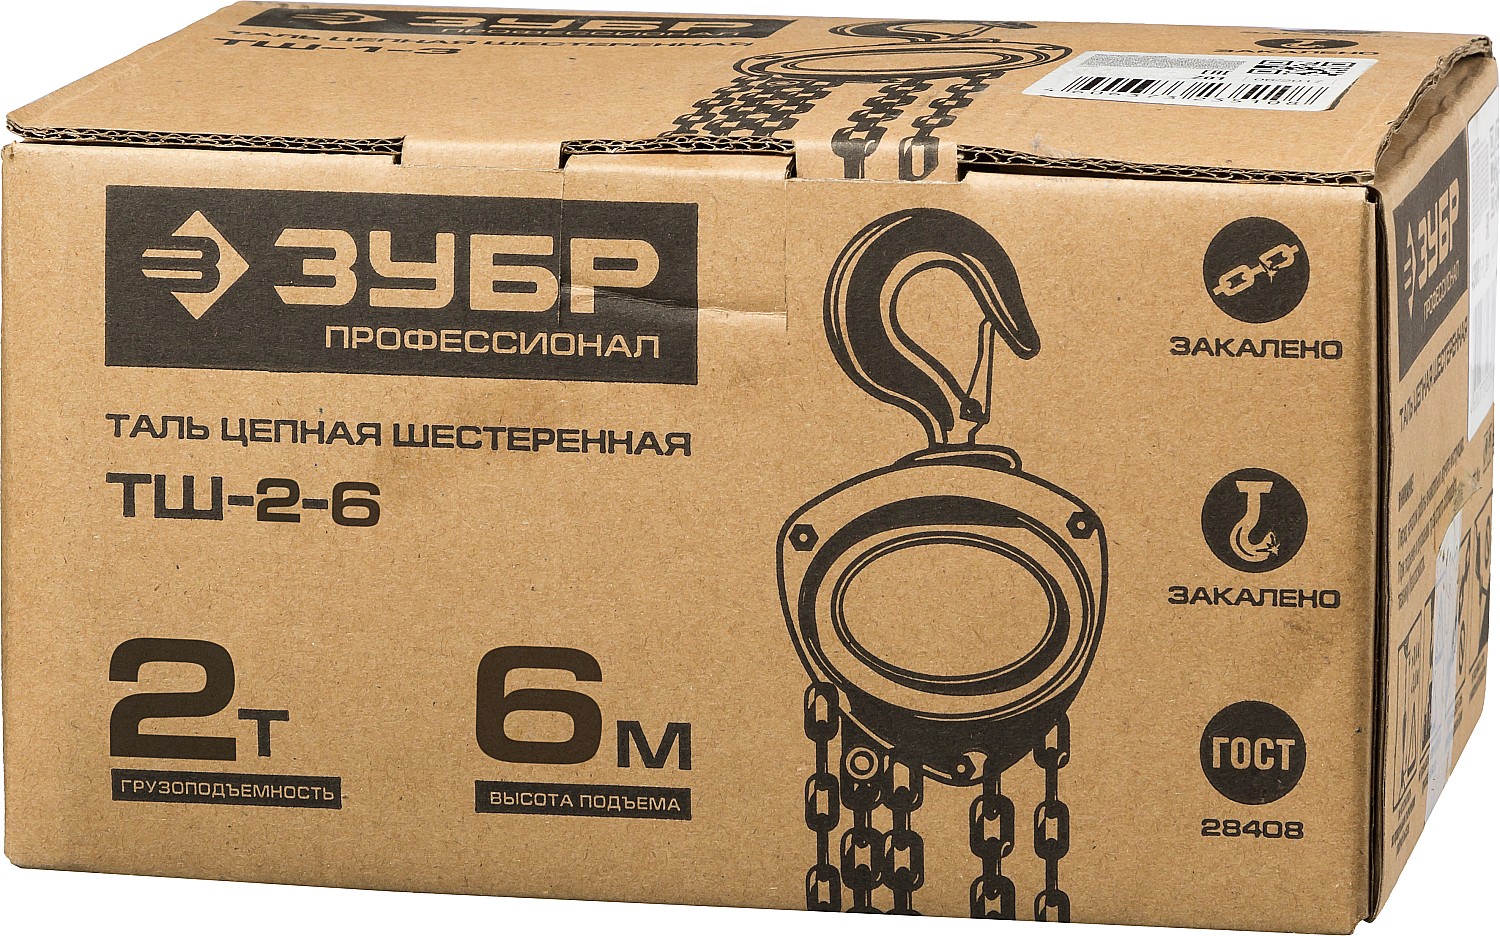 ЗУБР ТШ-2-6, 2 т, 6 м, ручная цепная шестеренная таль, Профессионал (43082-2)